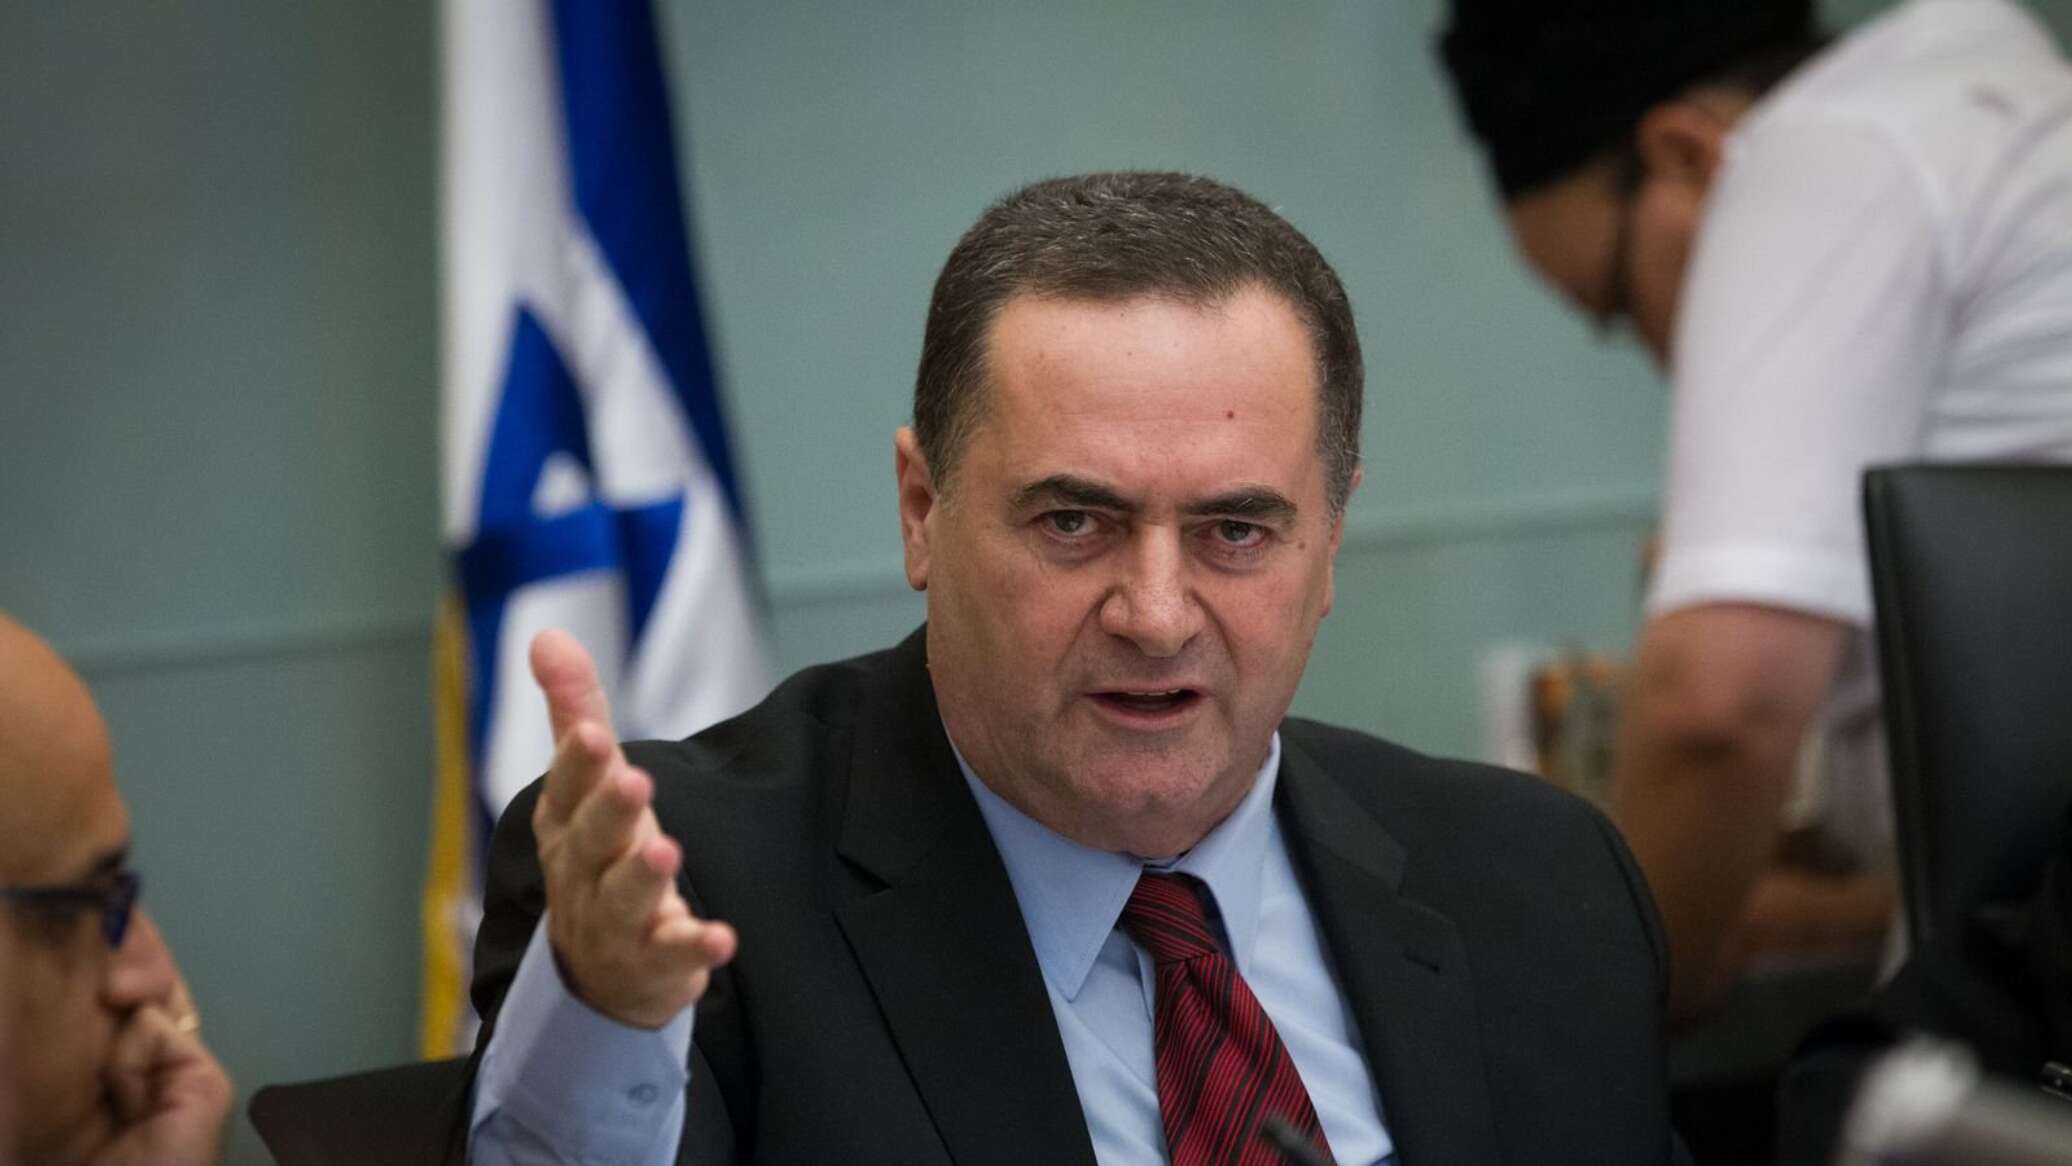 وزير الخارجية البرازيلي يتهم نظيره الإسرائيلي بـ"الكذب" بشأن غزة